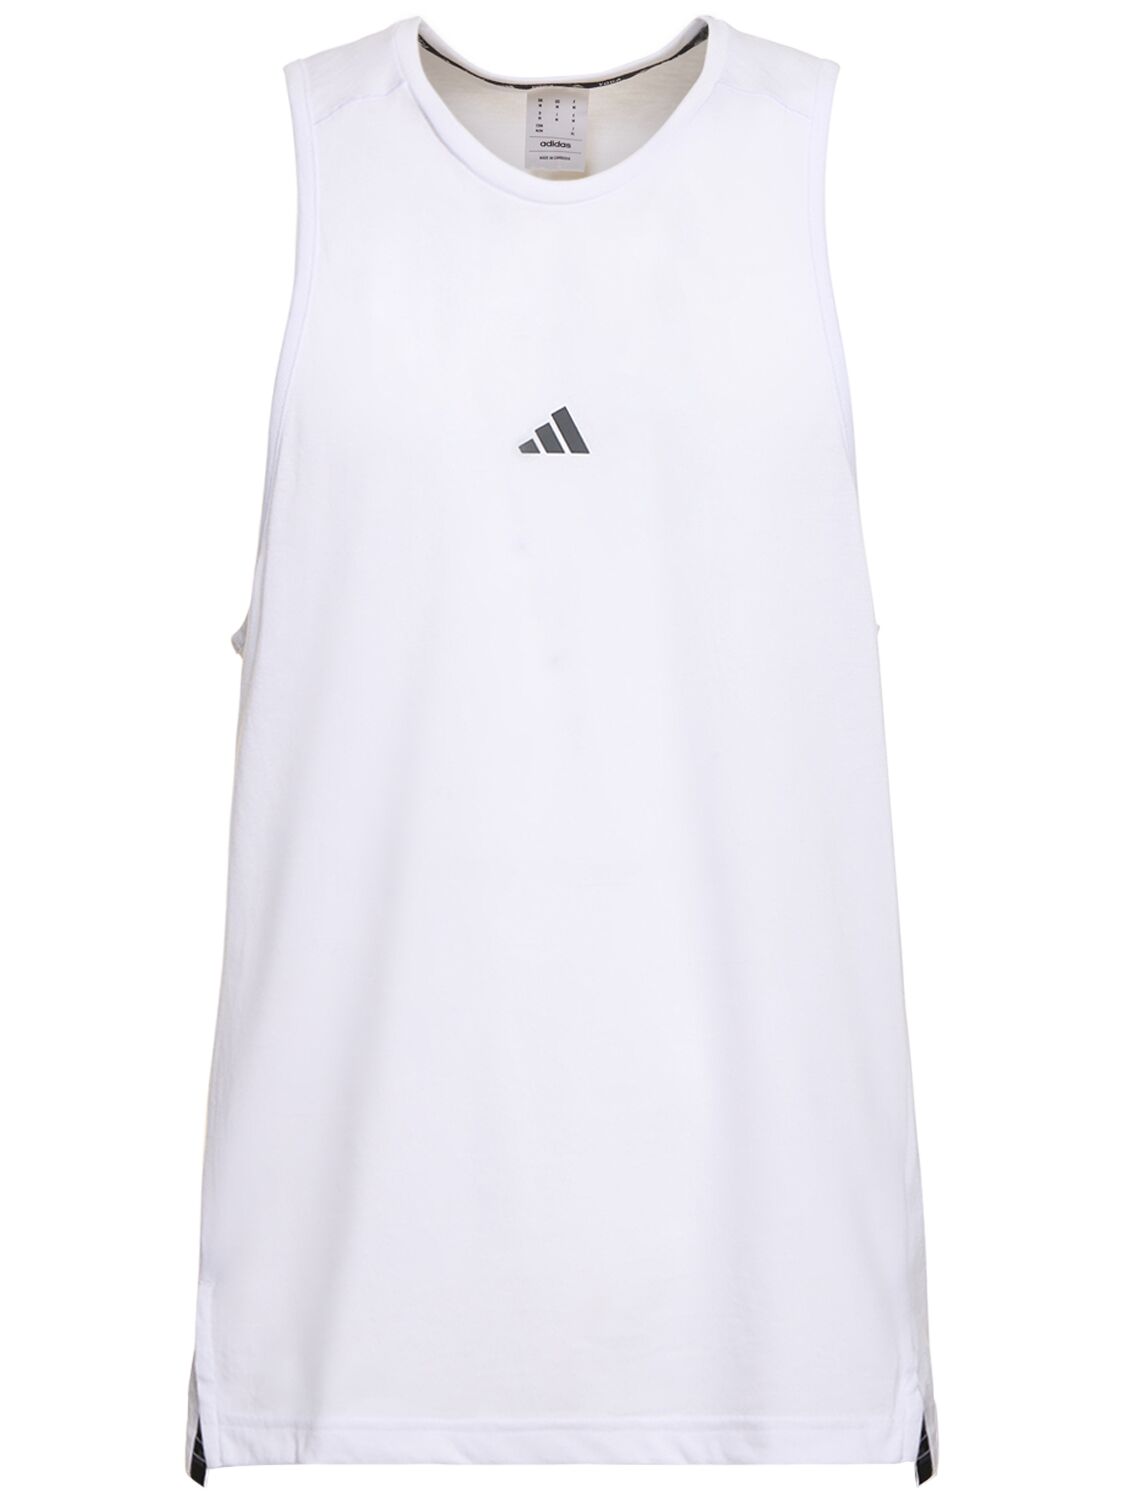 Adidas Originals Yoga Tank Top In White